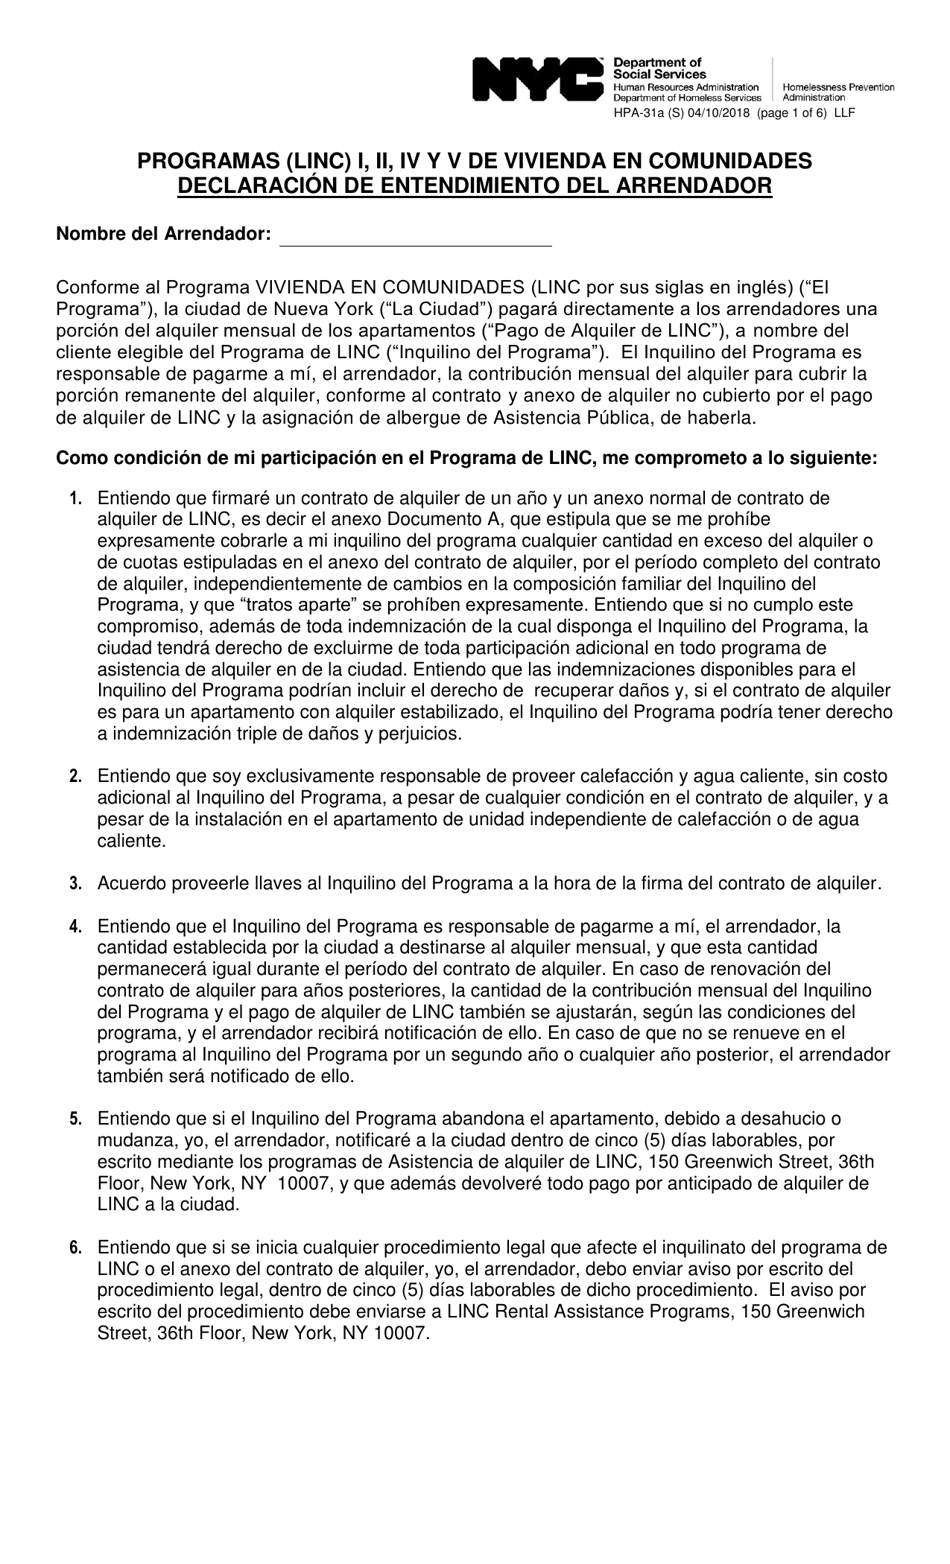 Formulario HPA-31A (S) Programas (Linc) I, II, IV, Y V De Vivienda En Comunidades Declaracion De Entendimiento Del Arrendador - New York City (Spanish), Page 1